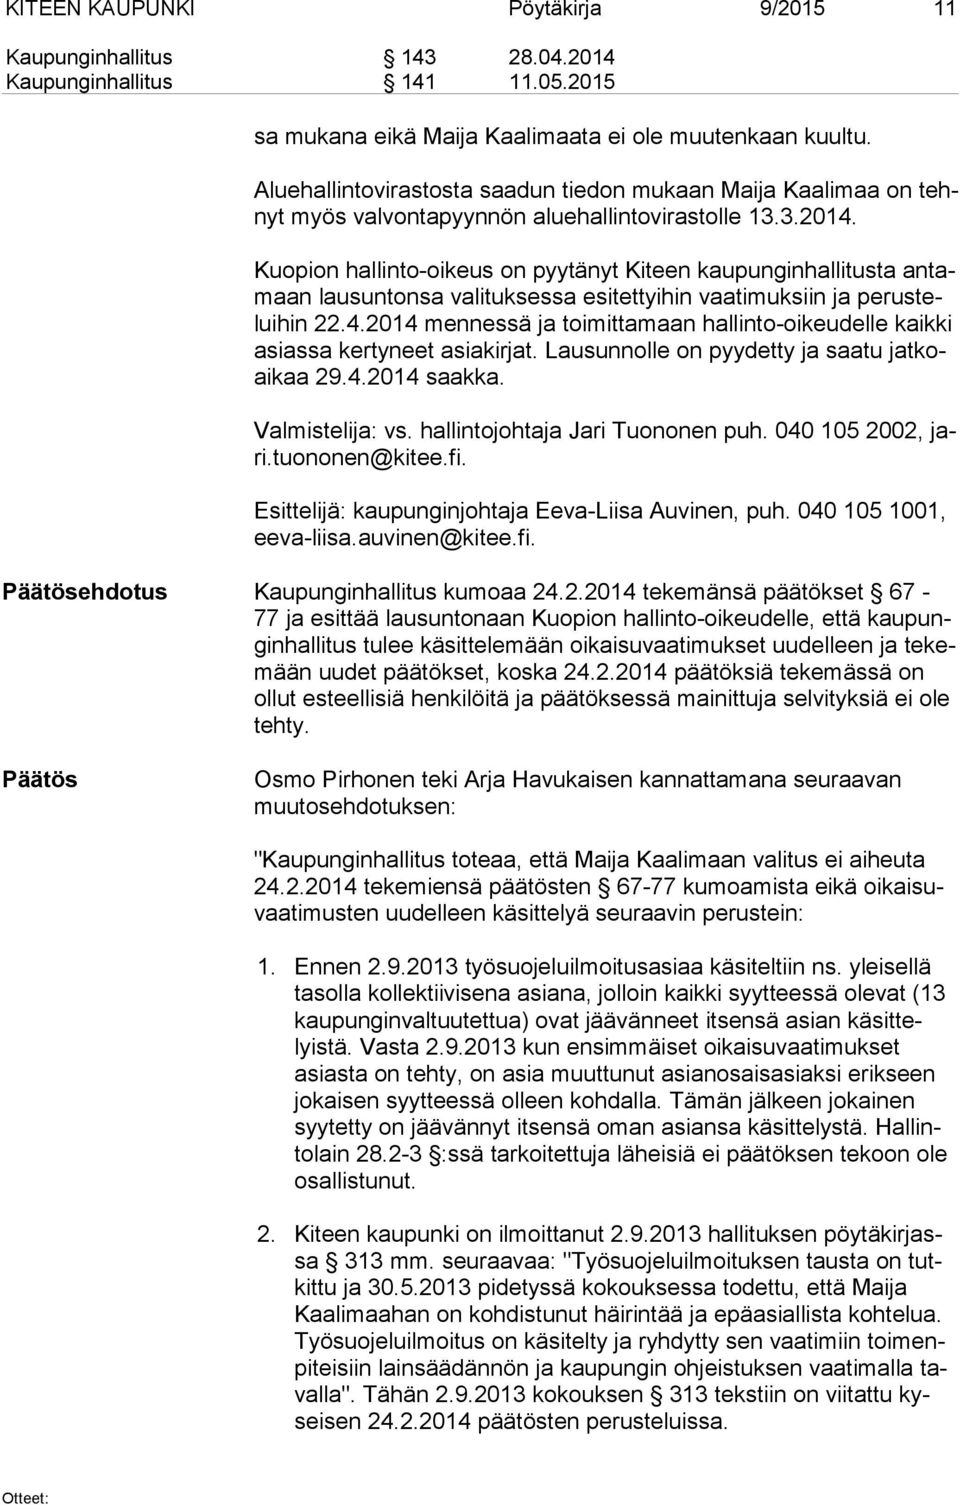 Verkkoseminaari: Työntekijän oikeudet Suomessa 22.9.